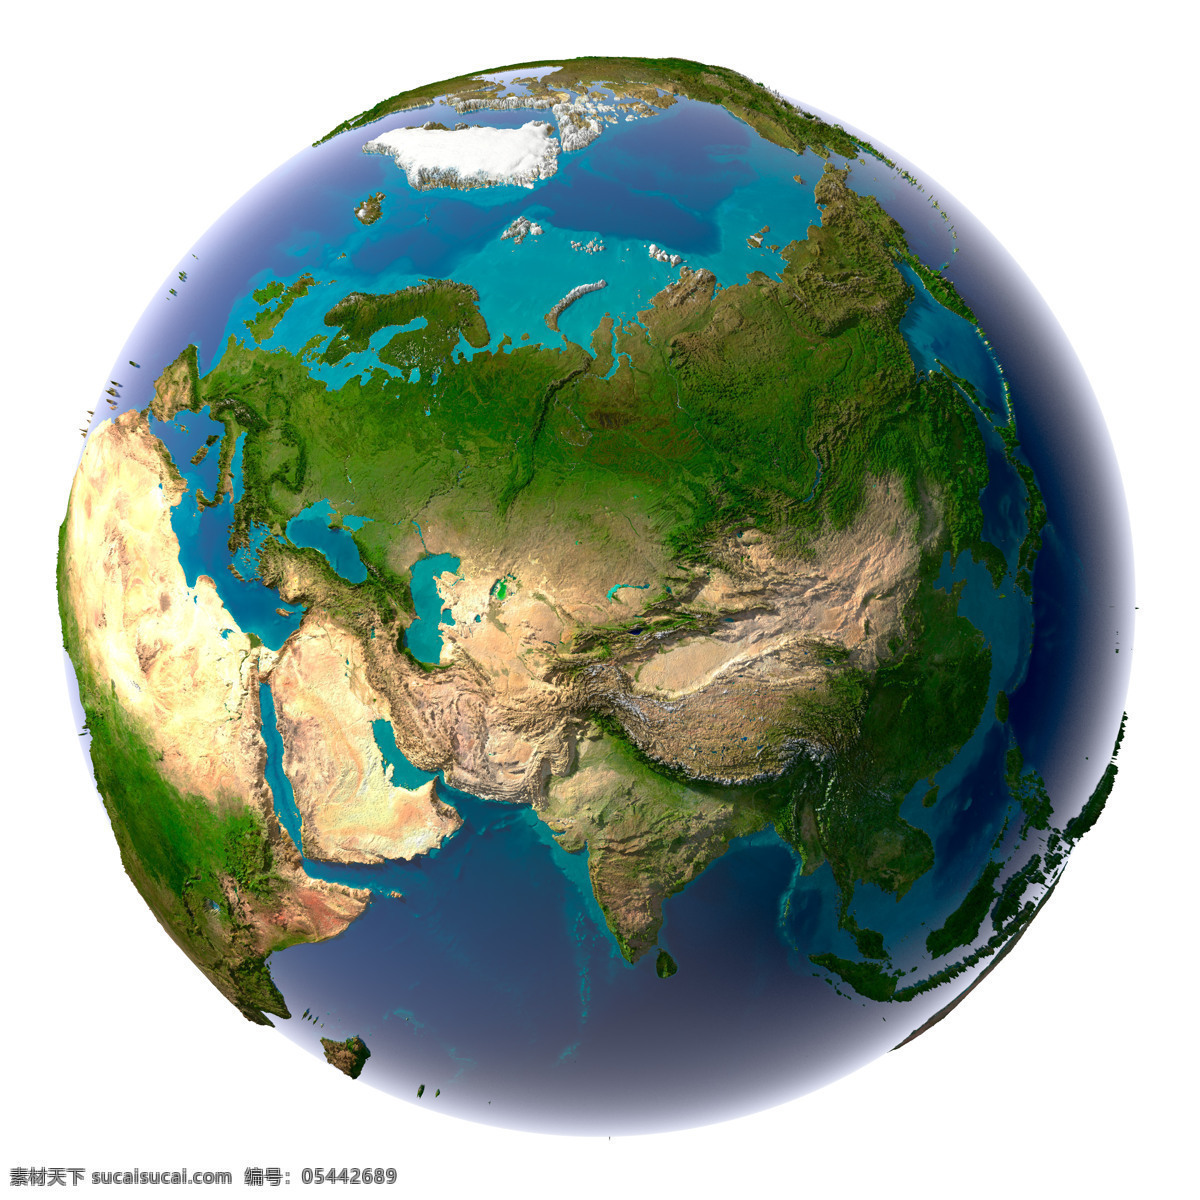 蓝色星球 地球模型 地球 地球素材 地球背景 立体图案 星球 地图 环保 创意图片 其他类别 环境家居 白色